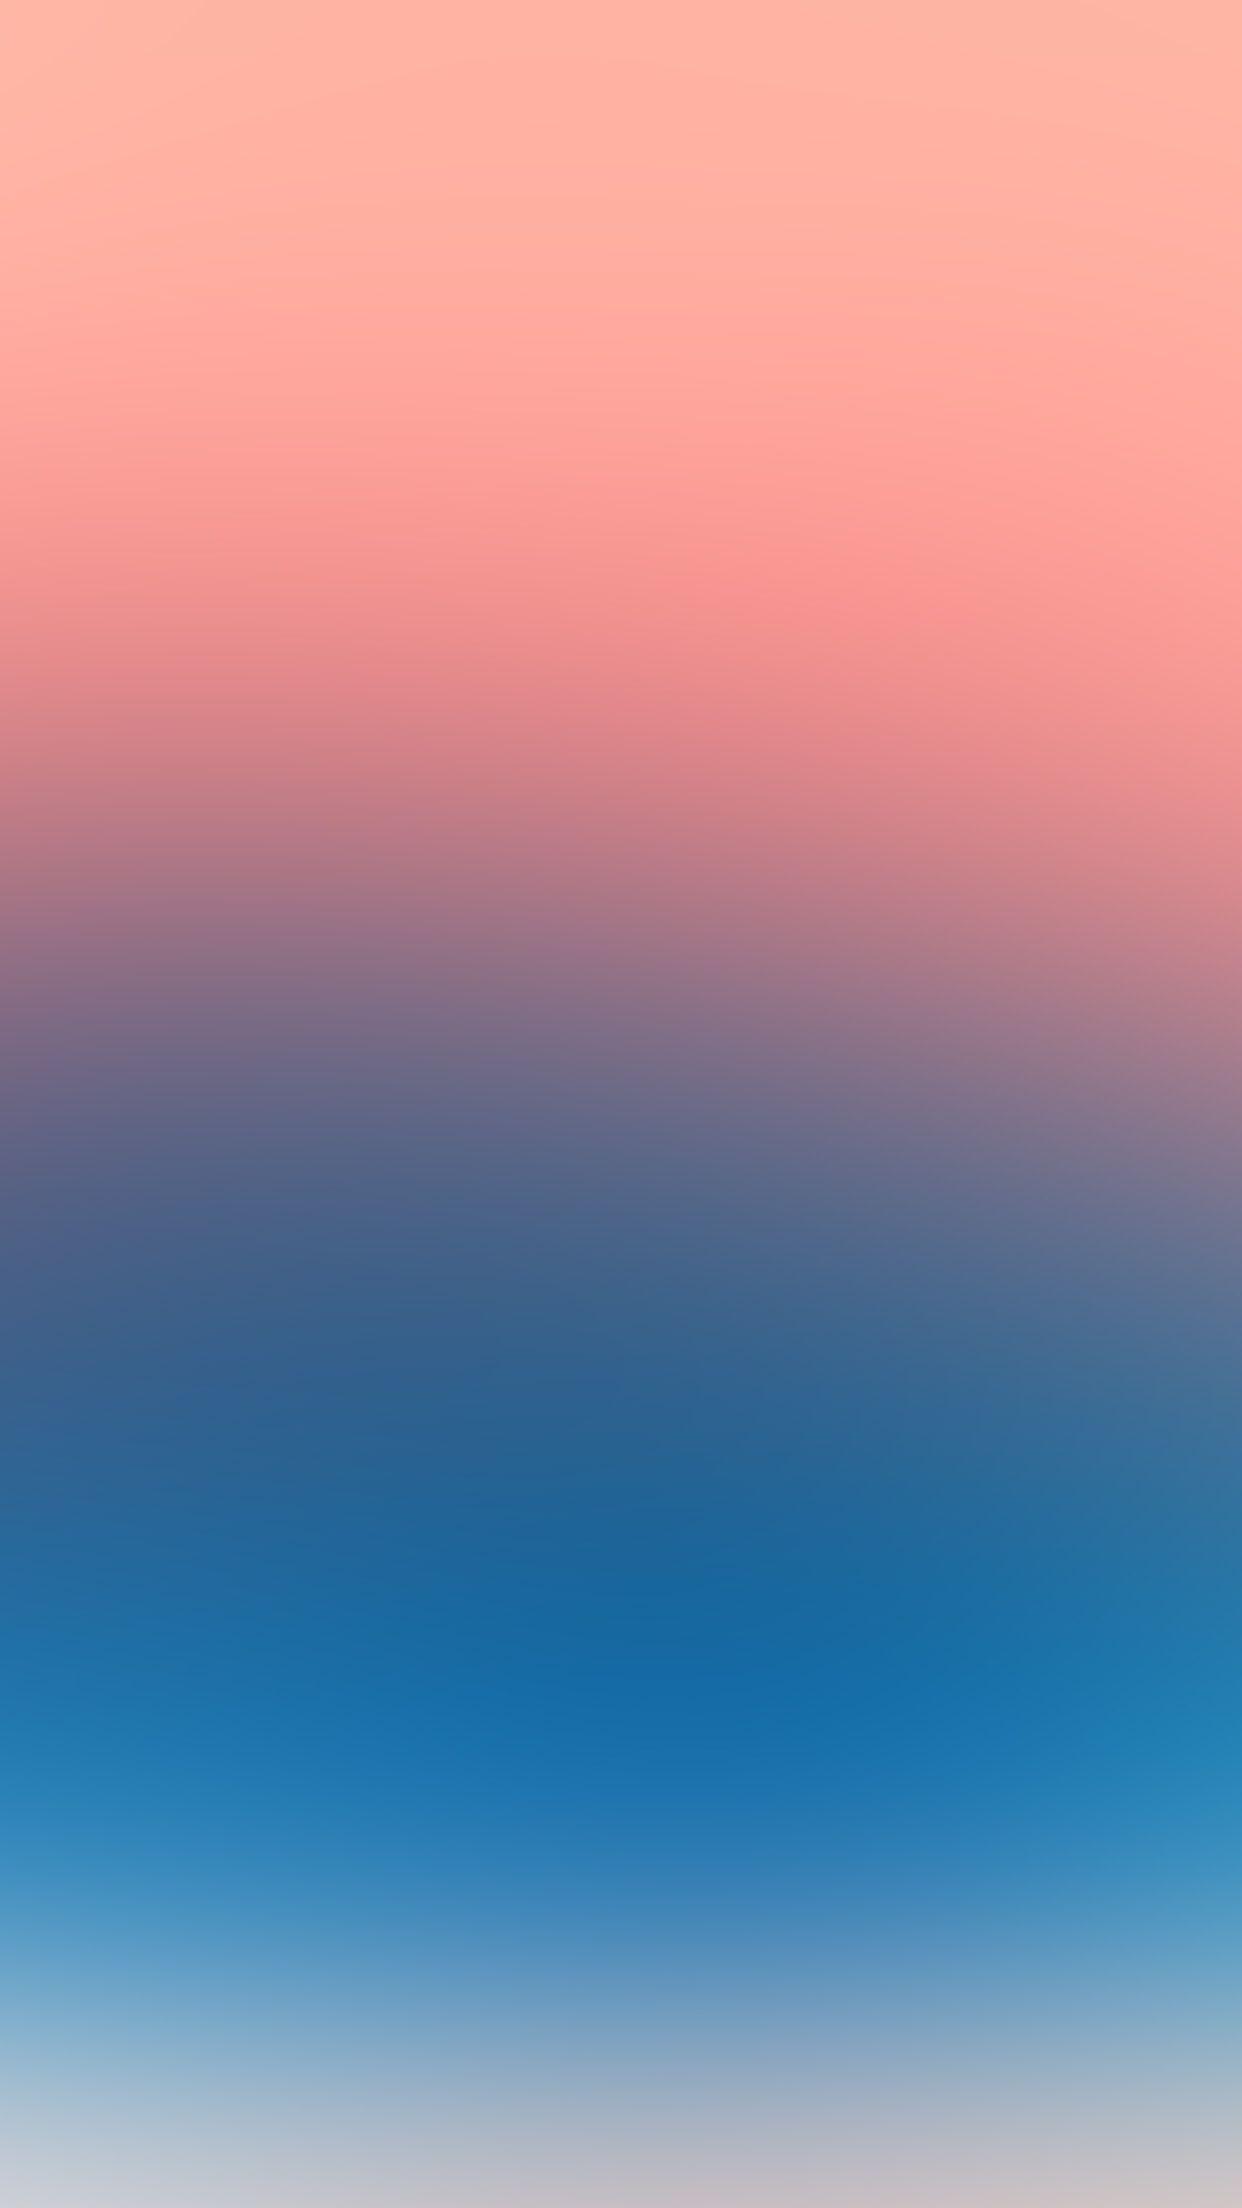 iPhone7 wallpaper. pink blue gradation blur